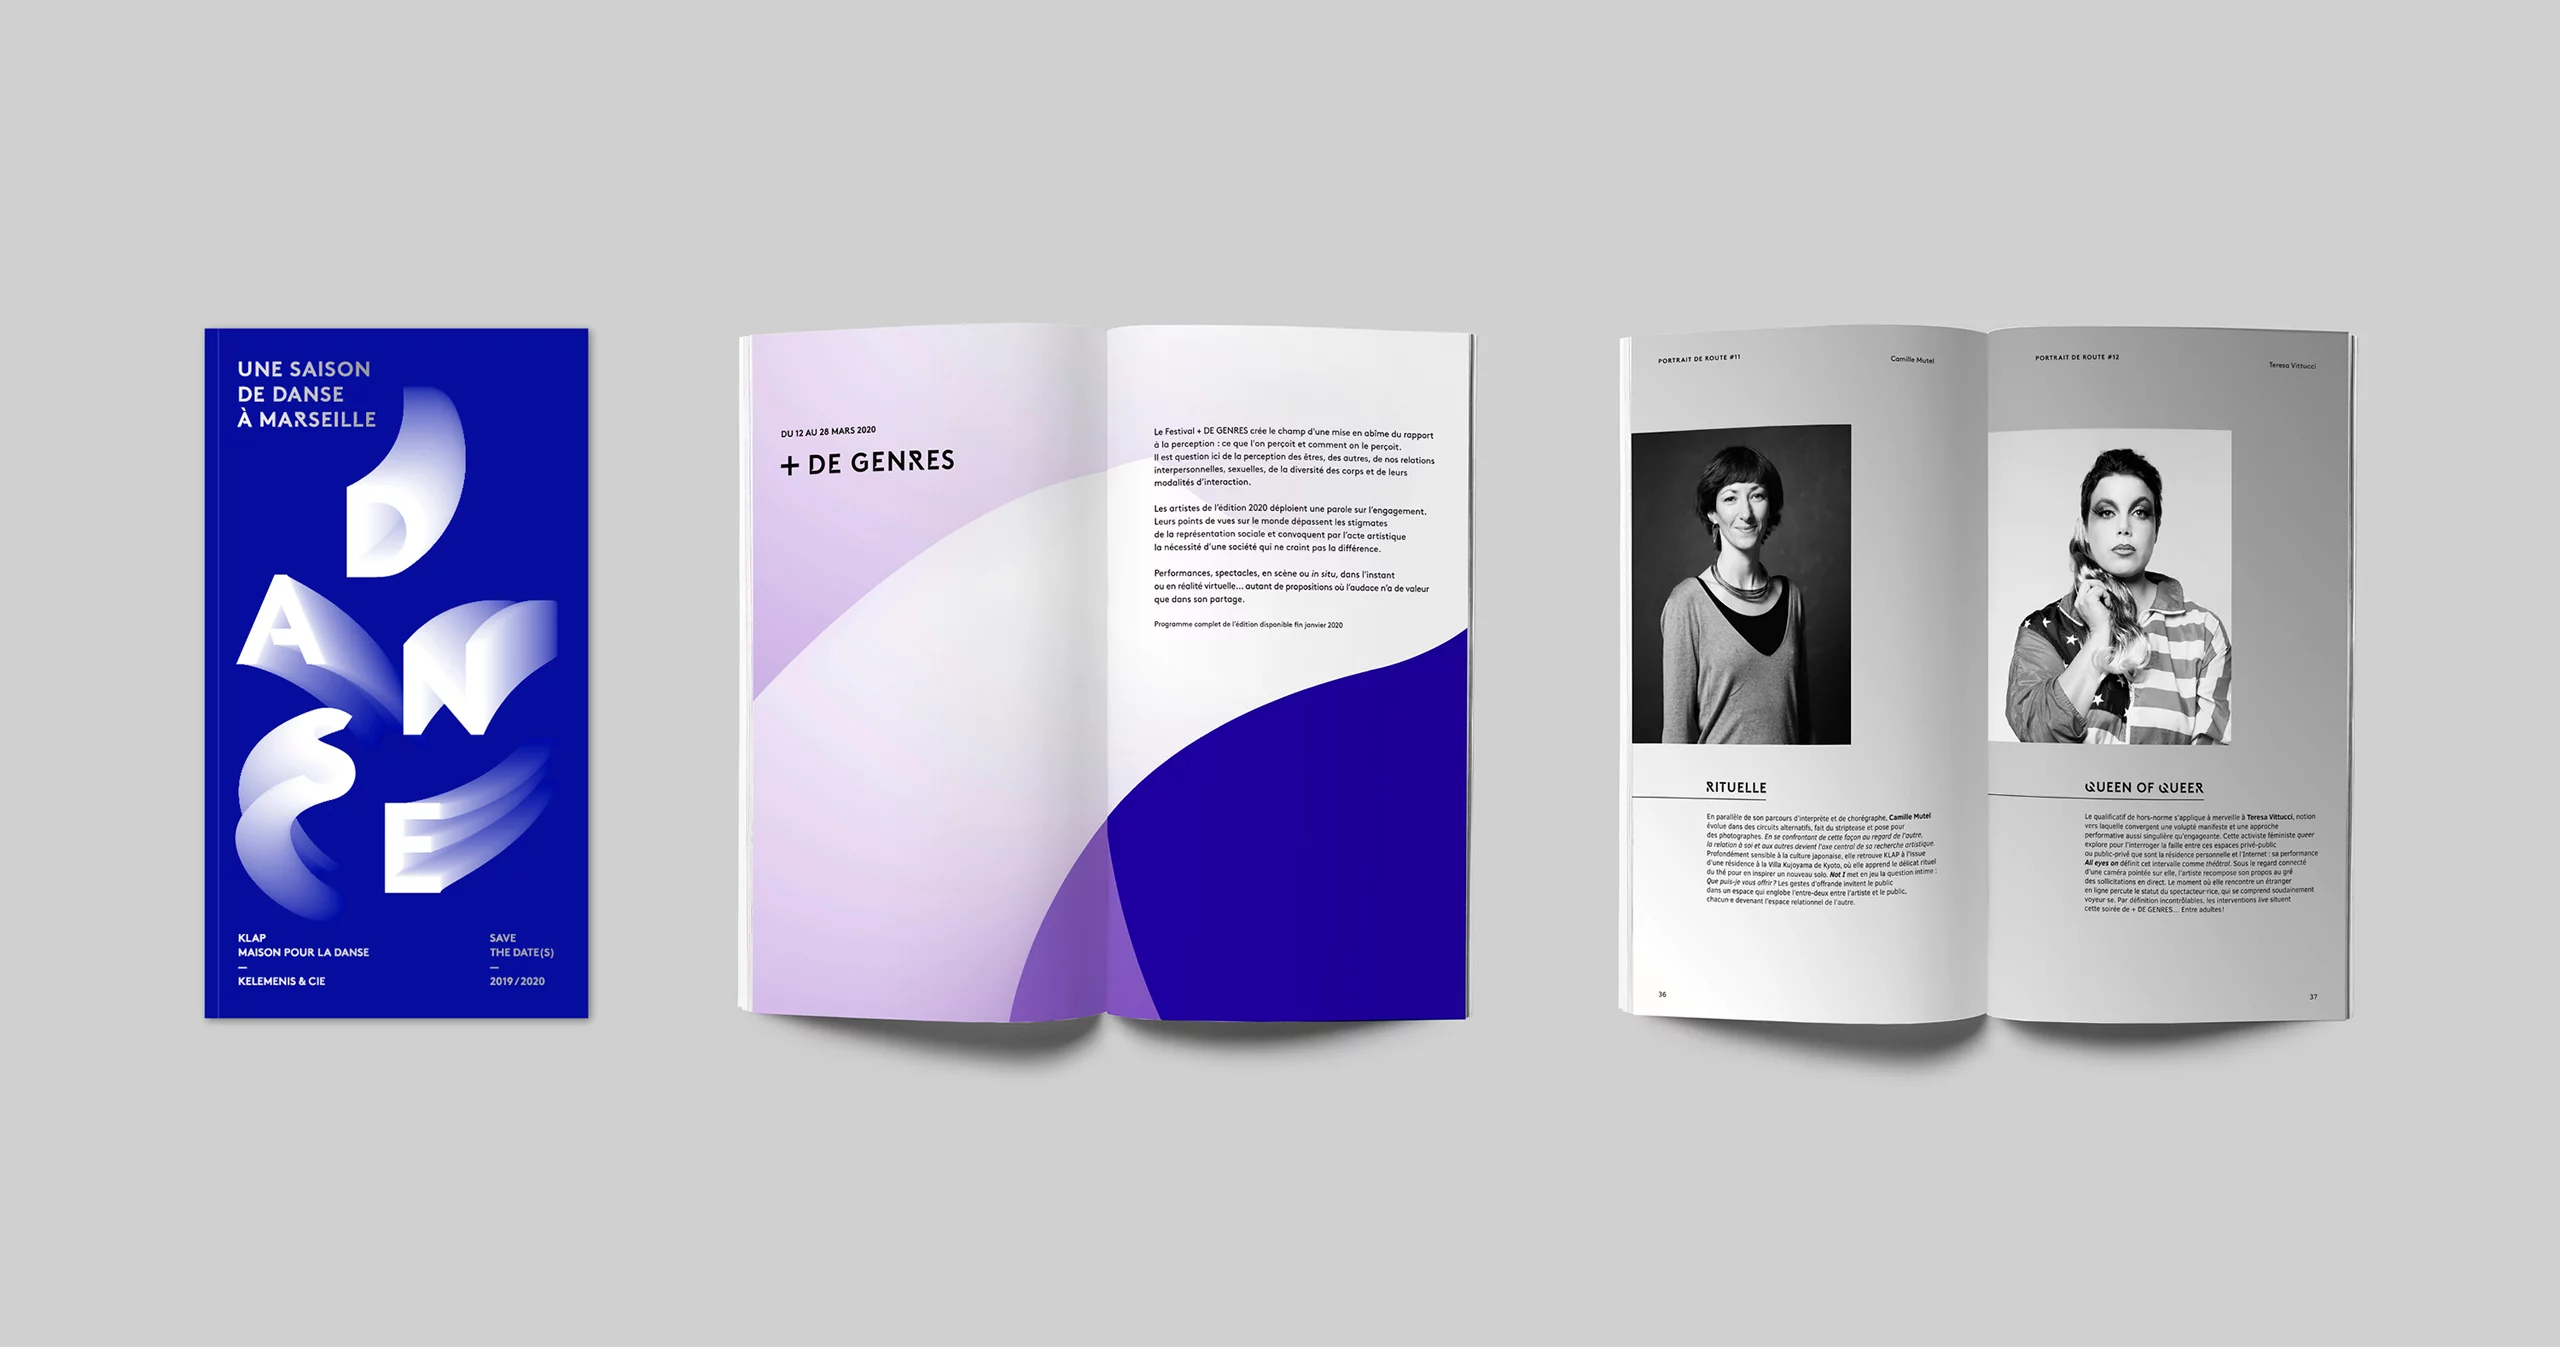 Couverture et pages intérieures de la brochure une saison de danse à Marseille 2019-2020. Jeux de lettres blanches en volumes filantes sur fond bleu